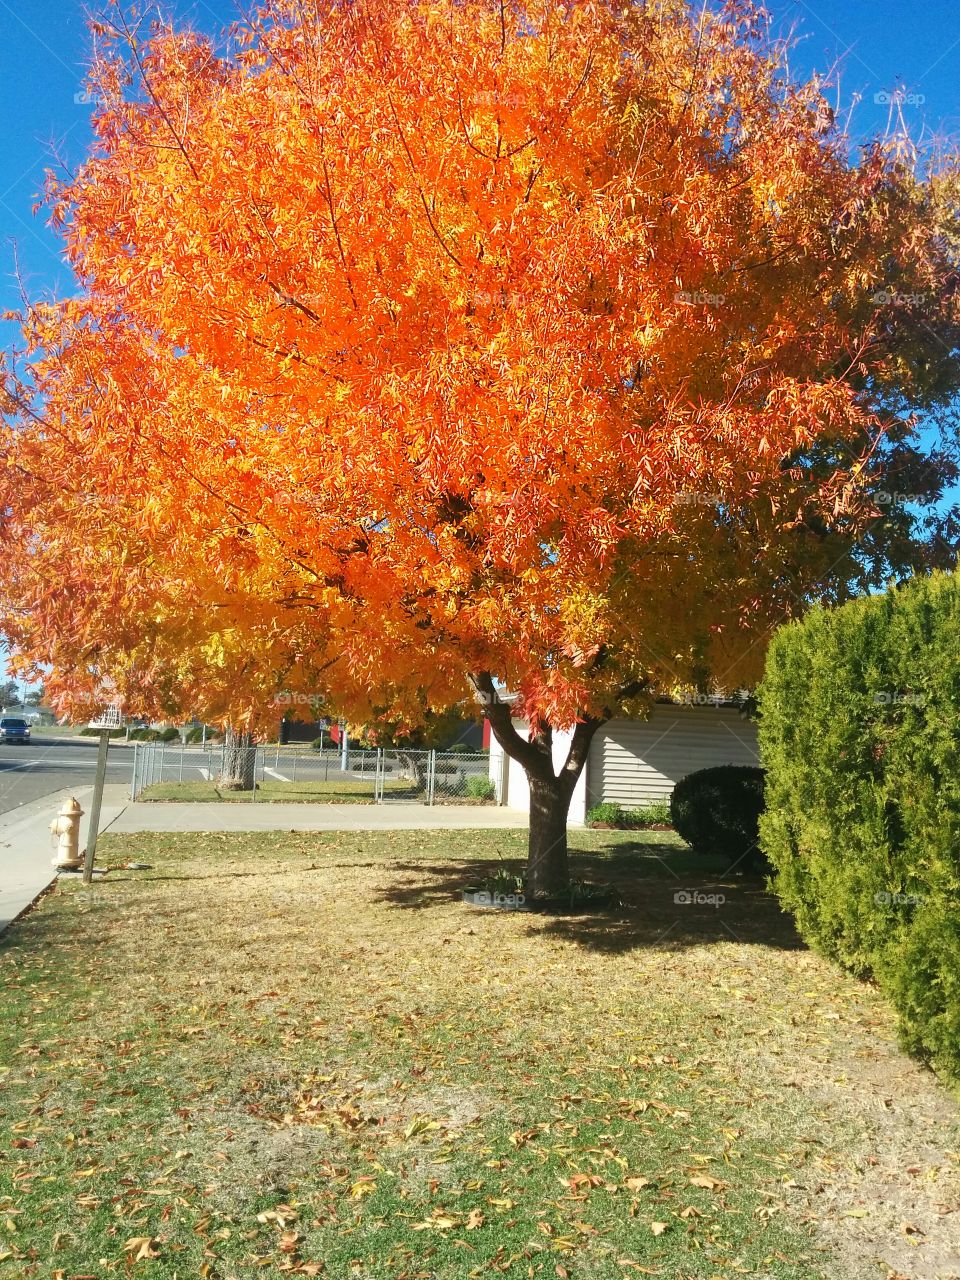 Autumn burst in Sacramento neighbourhood; a gorgeous tree transforms the neighbourhood. 